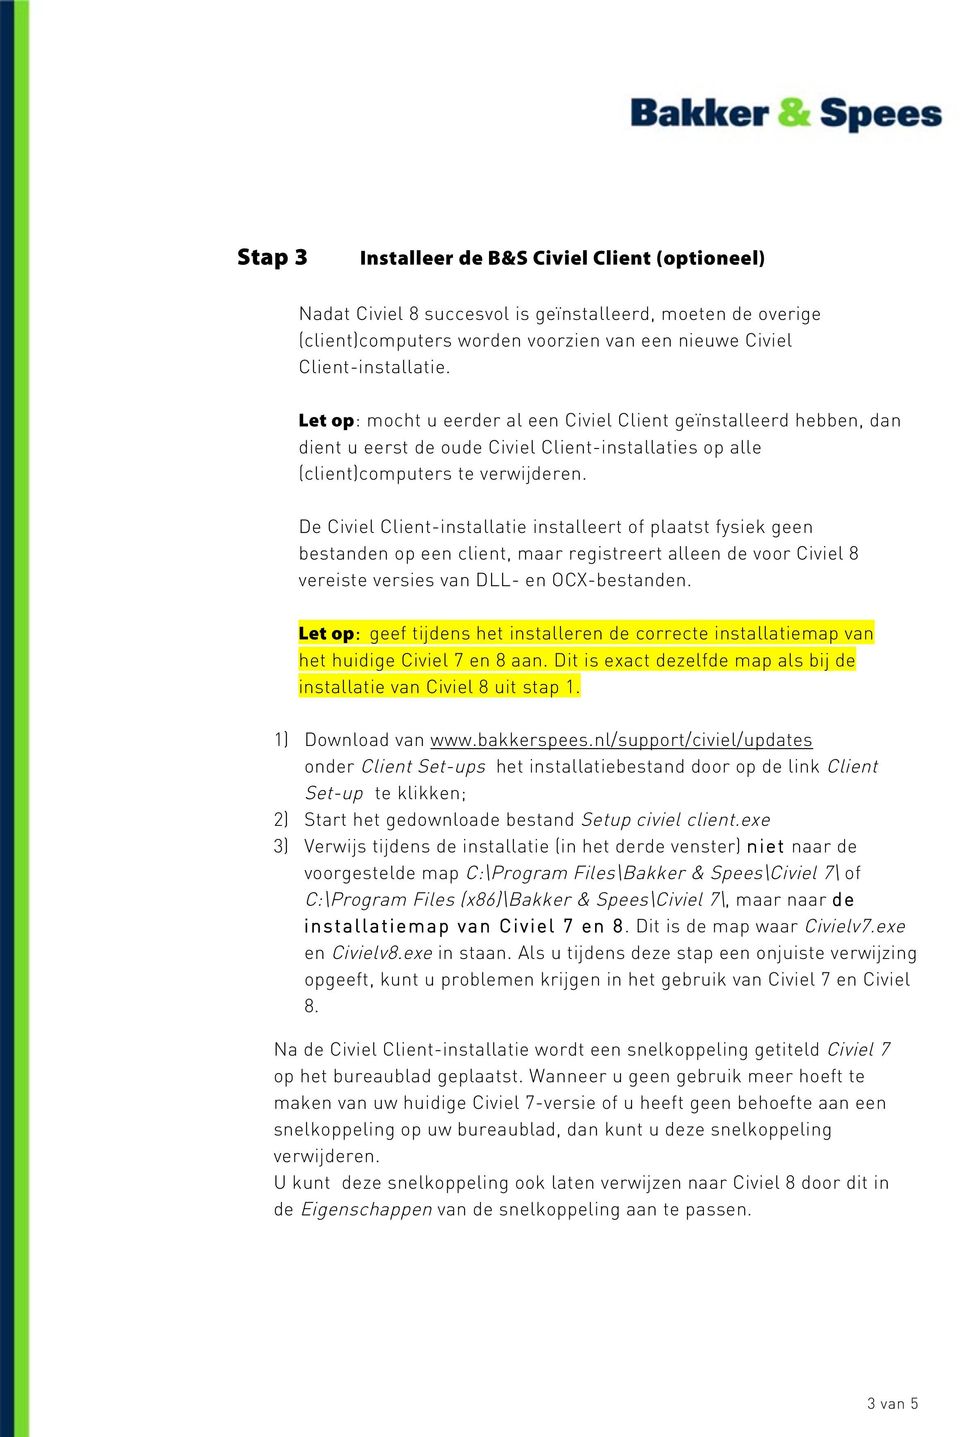 De Civiel Client-installatie installeert of plaatst fysiek geen bestanden op een client, maar registreert alleen de voor Civiel 8 vereiste versies van DLL- en OCX-bestanden.